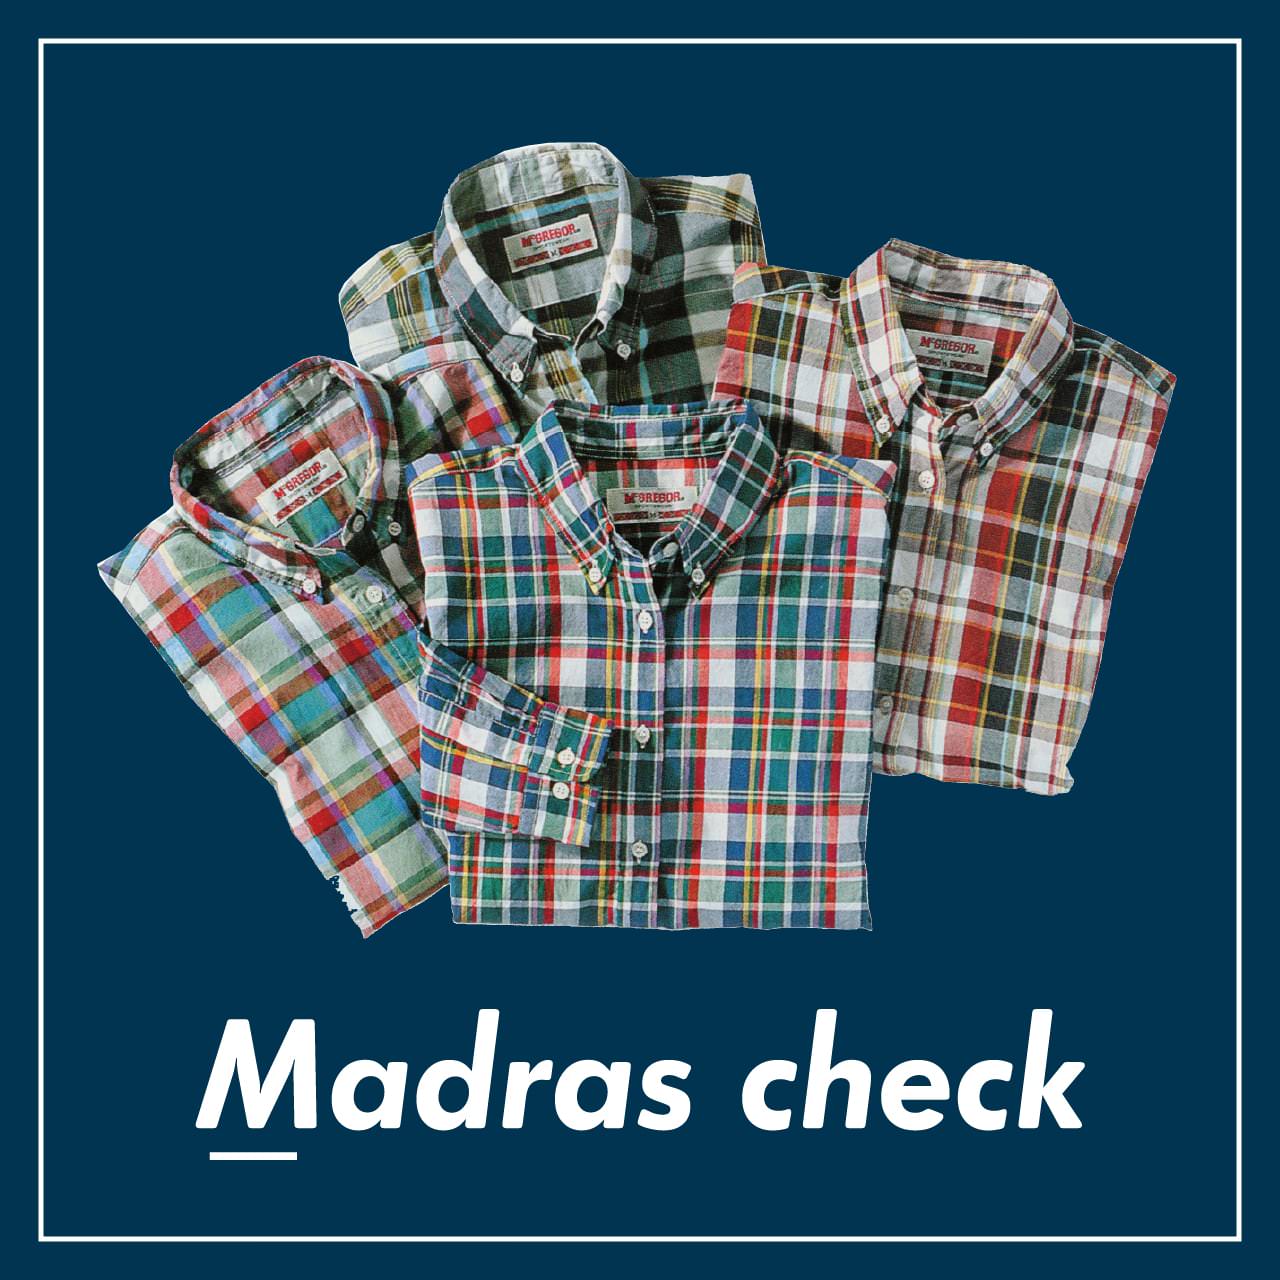 Madras check